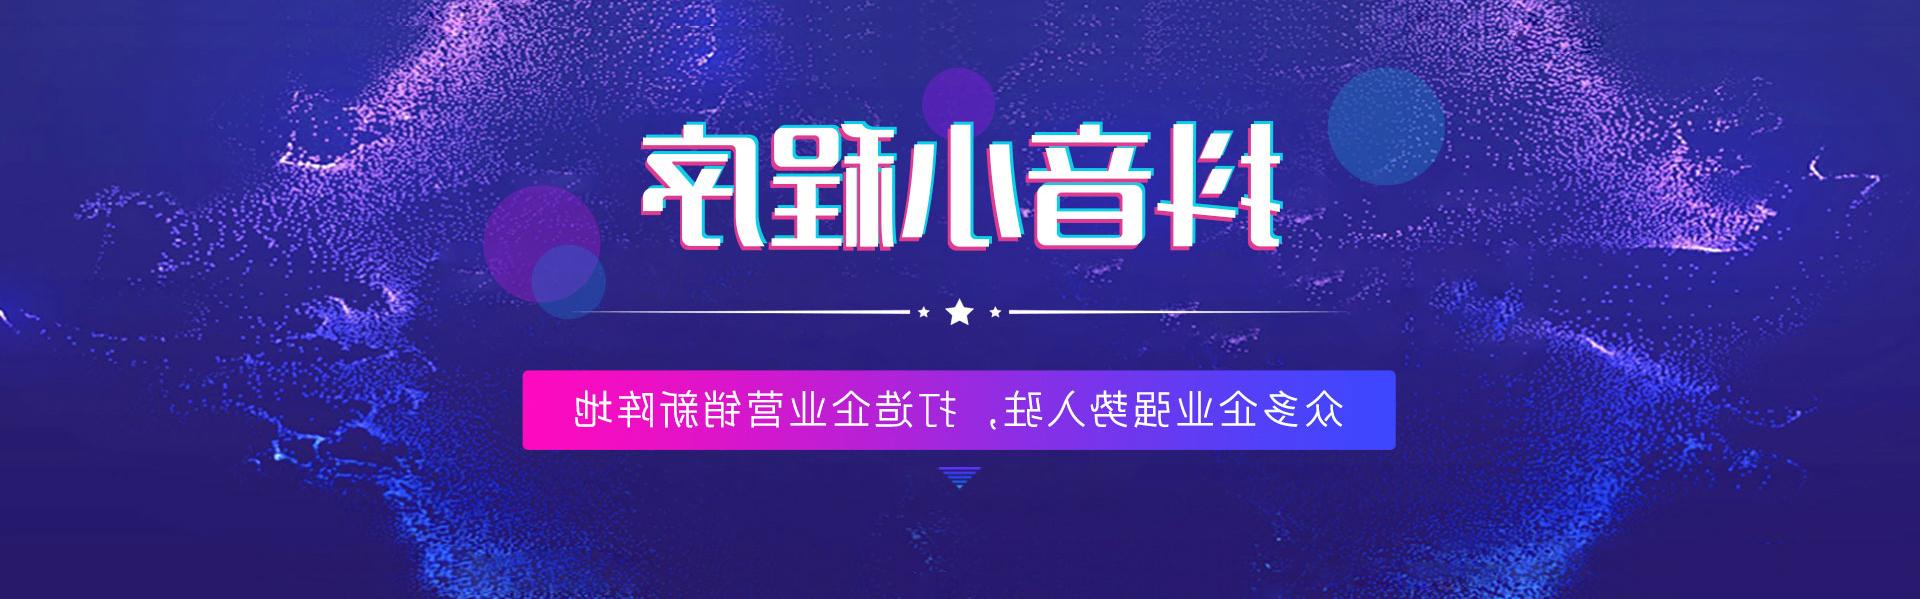 连云港抖音世界杯足彩app,打造企业营销新阵地